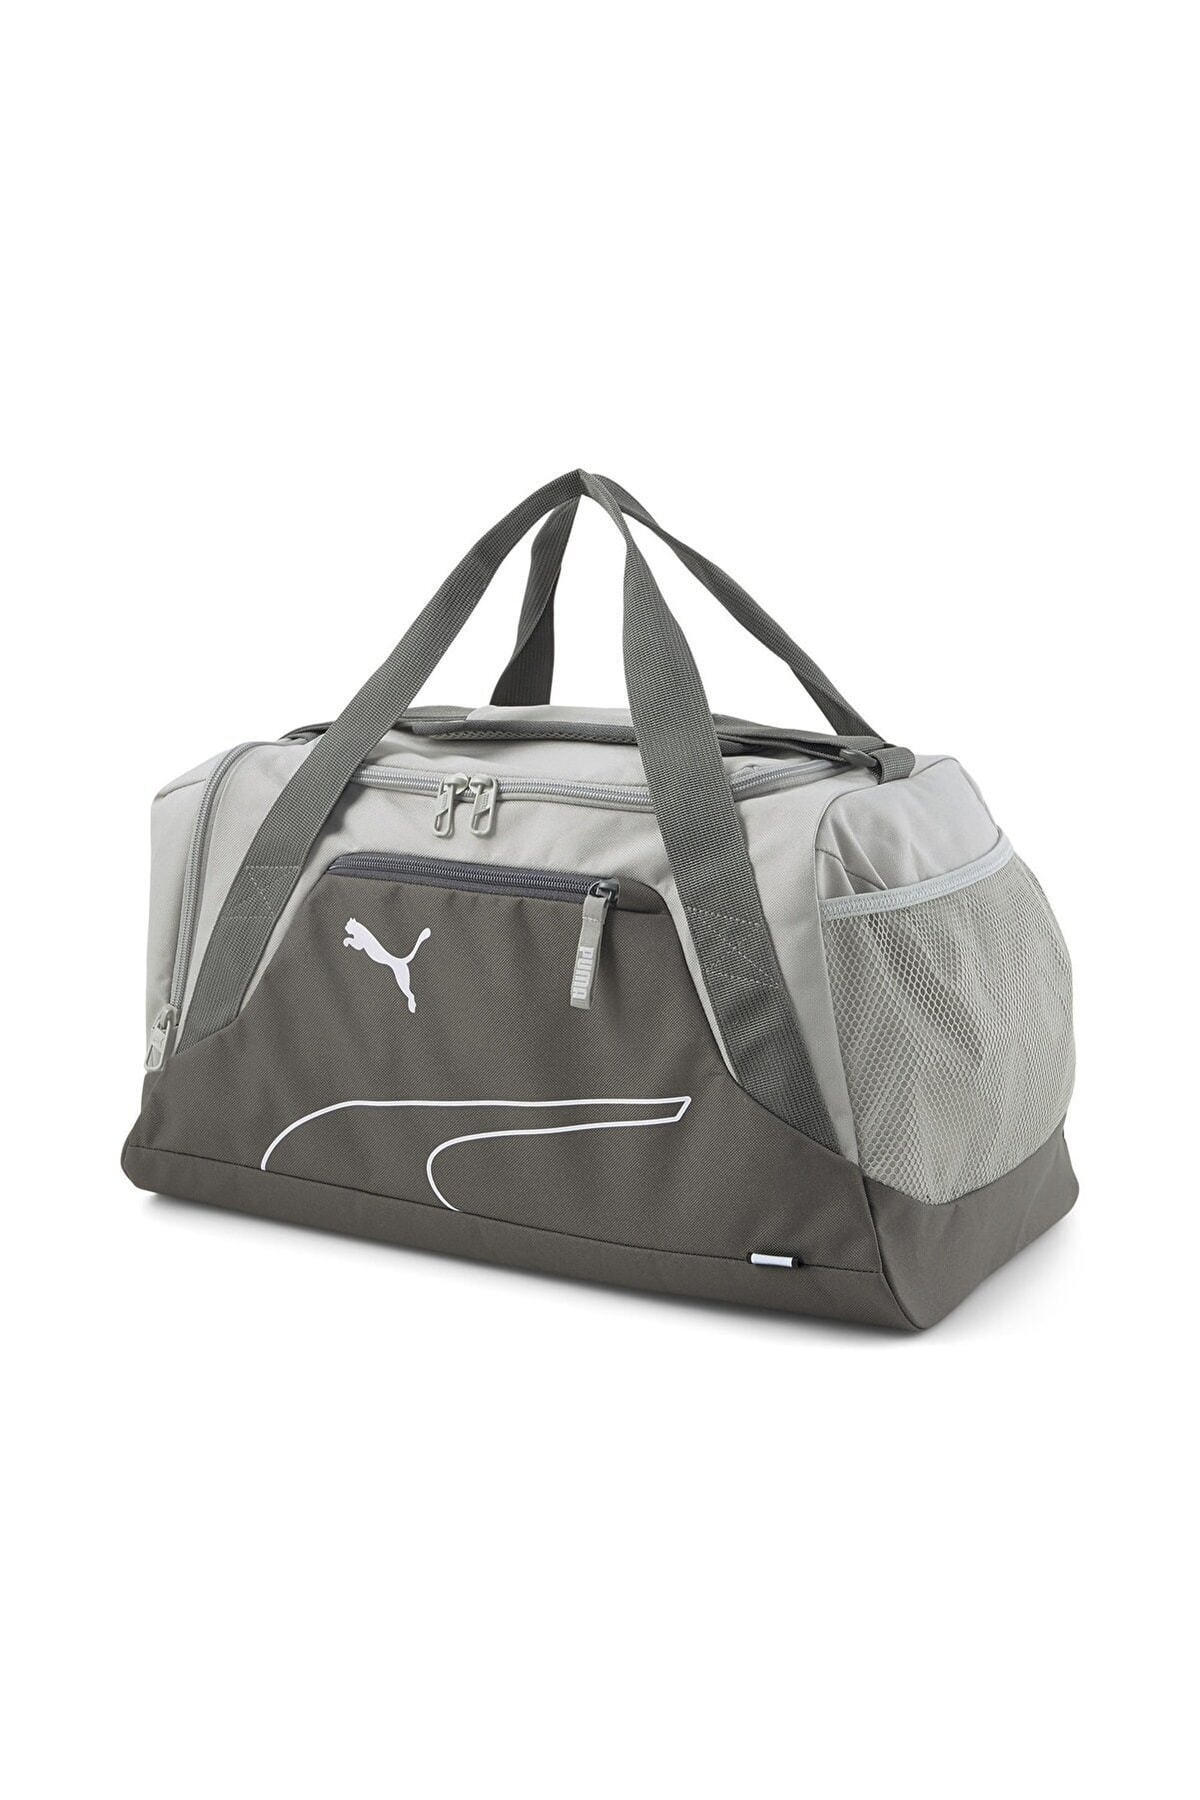 Puma 07923004 Fundamentals Sports Bag Gray Çanta/gri/